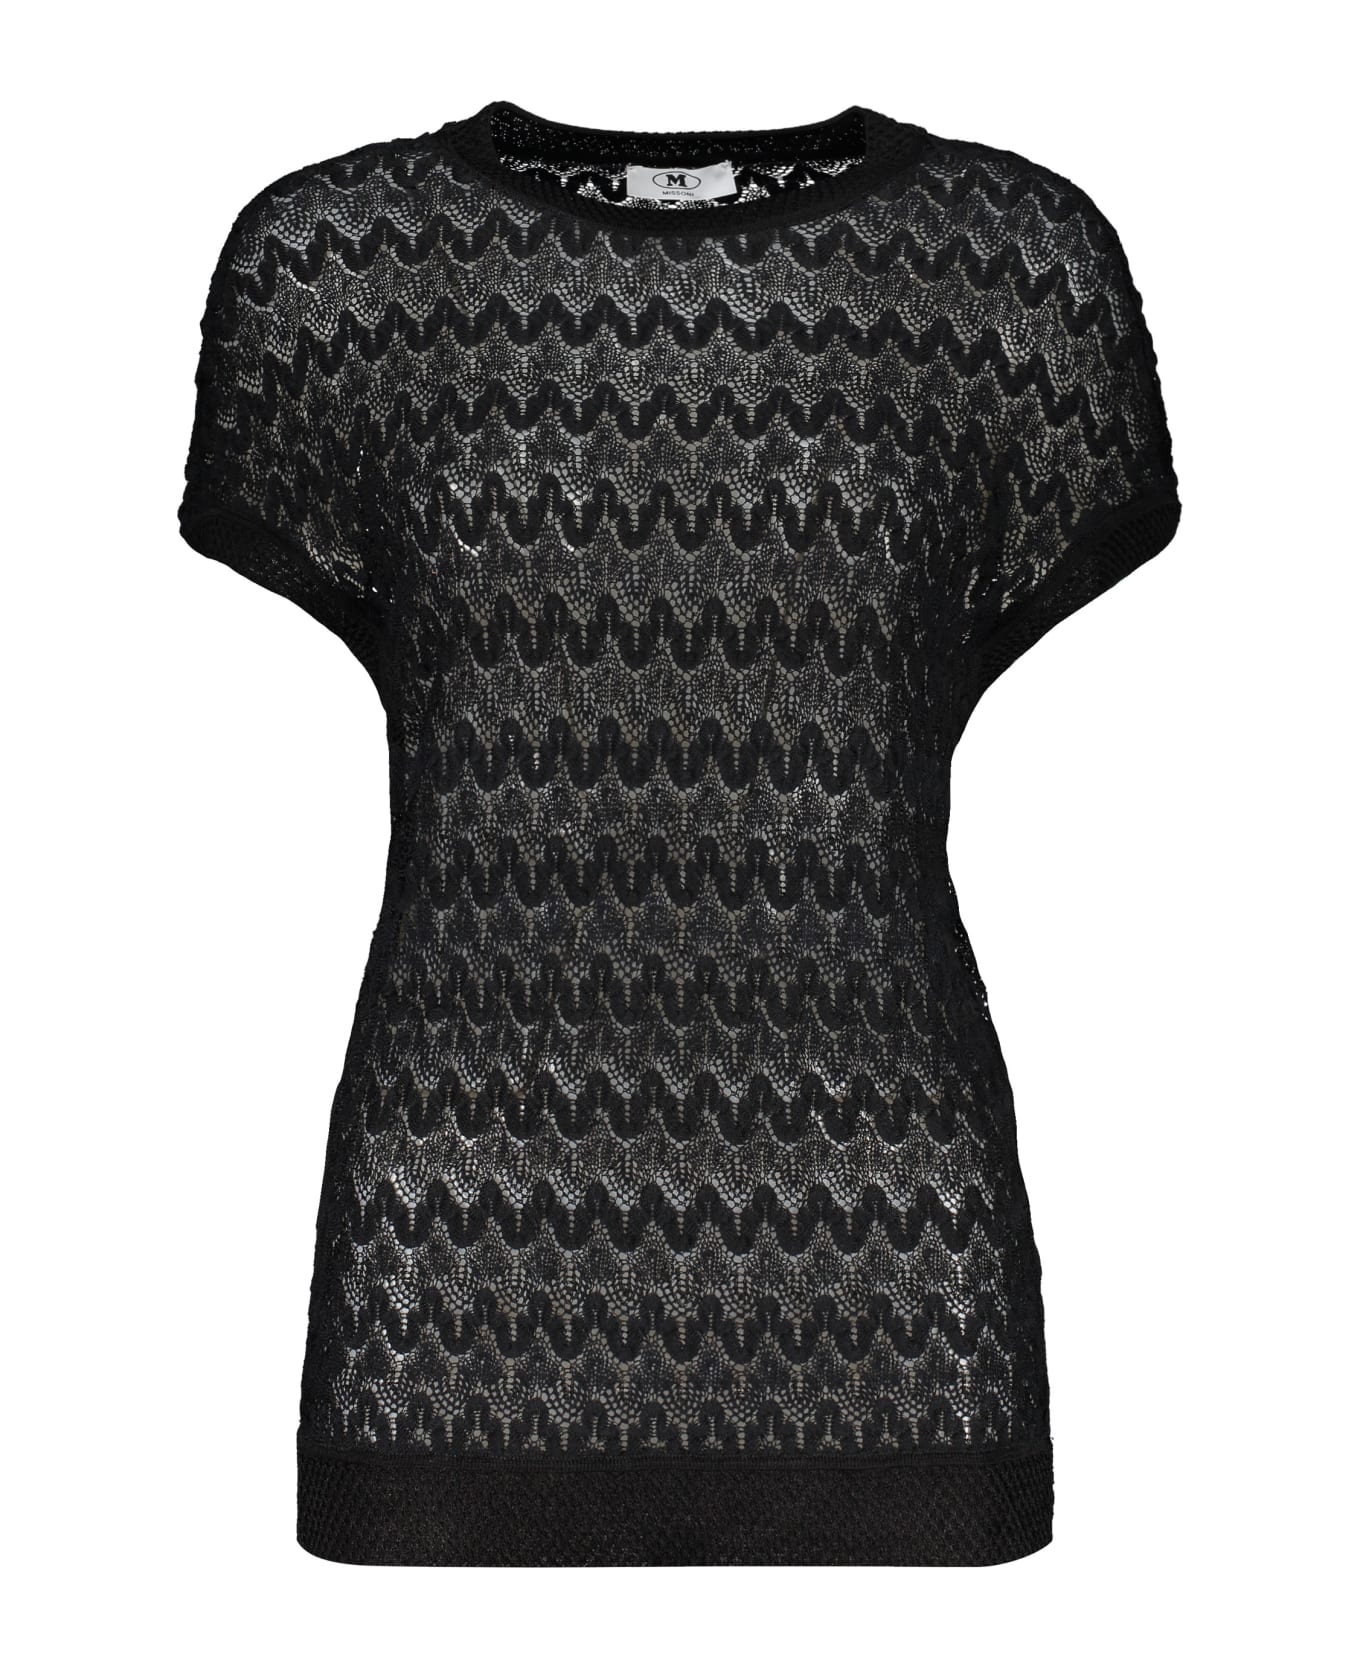 M Missoni Knitted Top - black ニットウェア